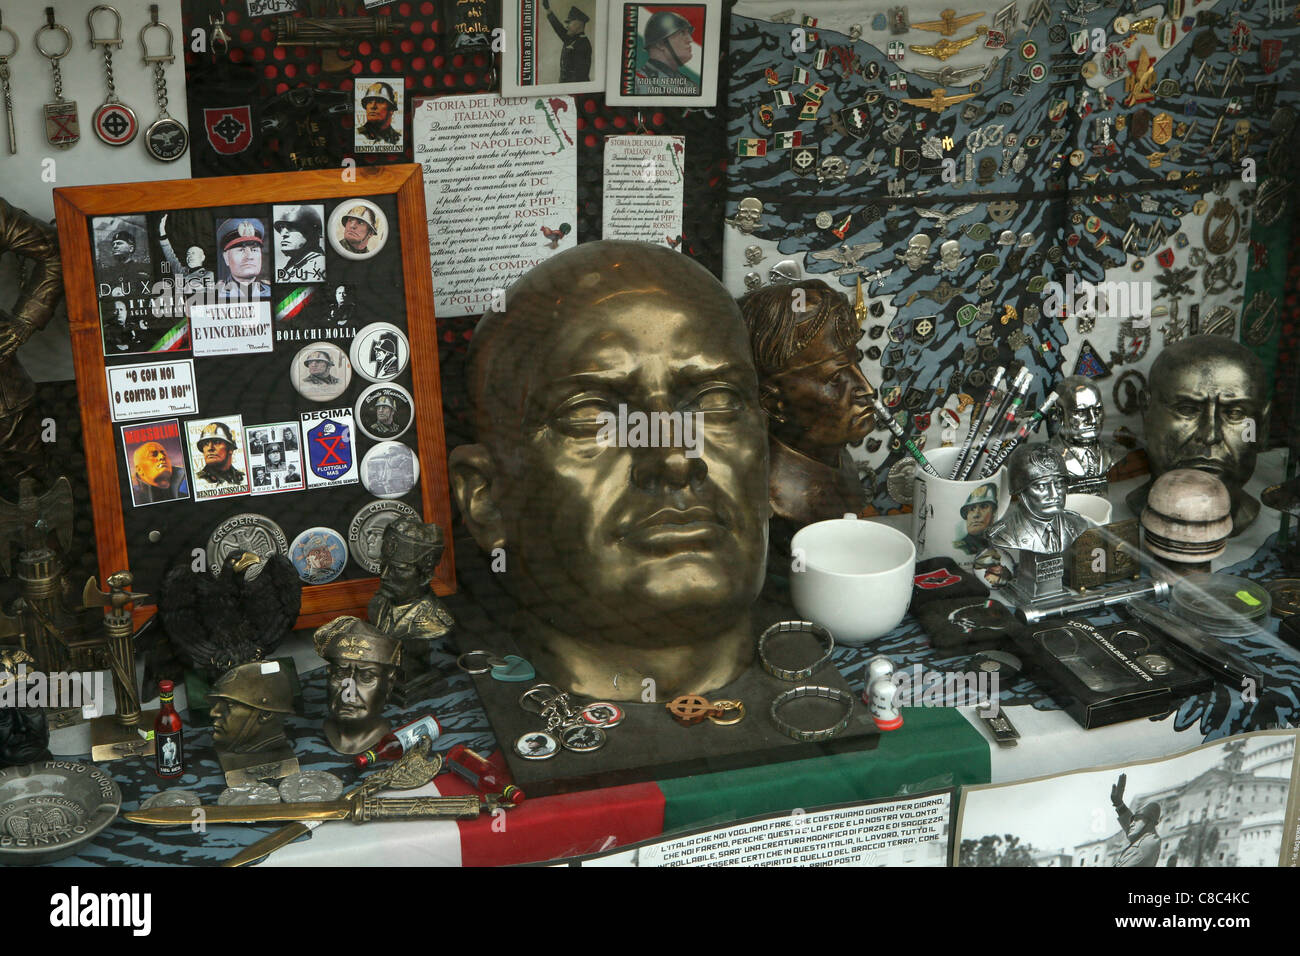 Fascist souvenirs in a souvenir shop in Predappio, Italy. Stock Photo